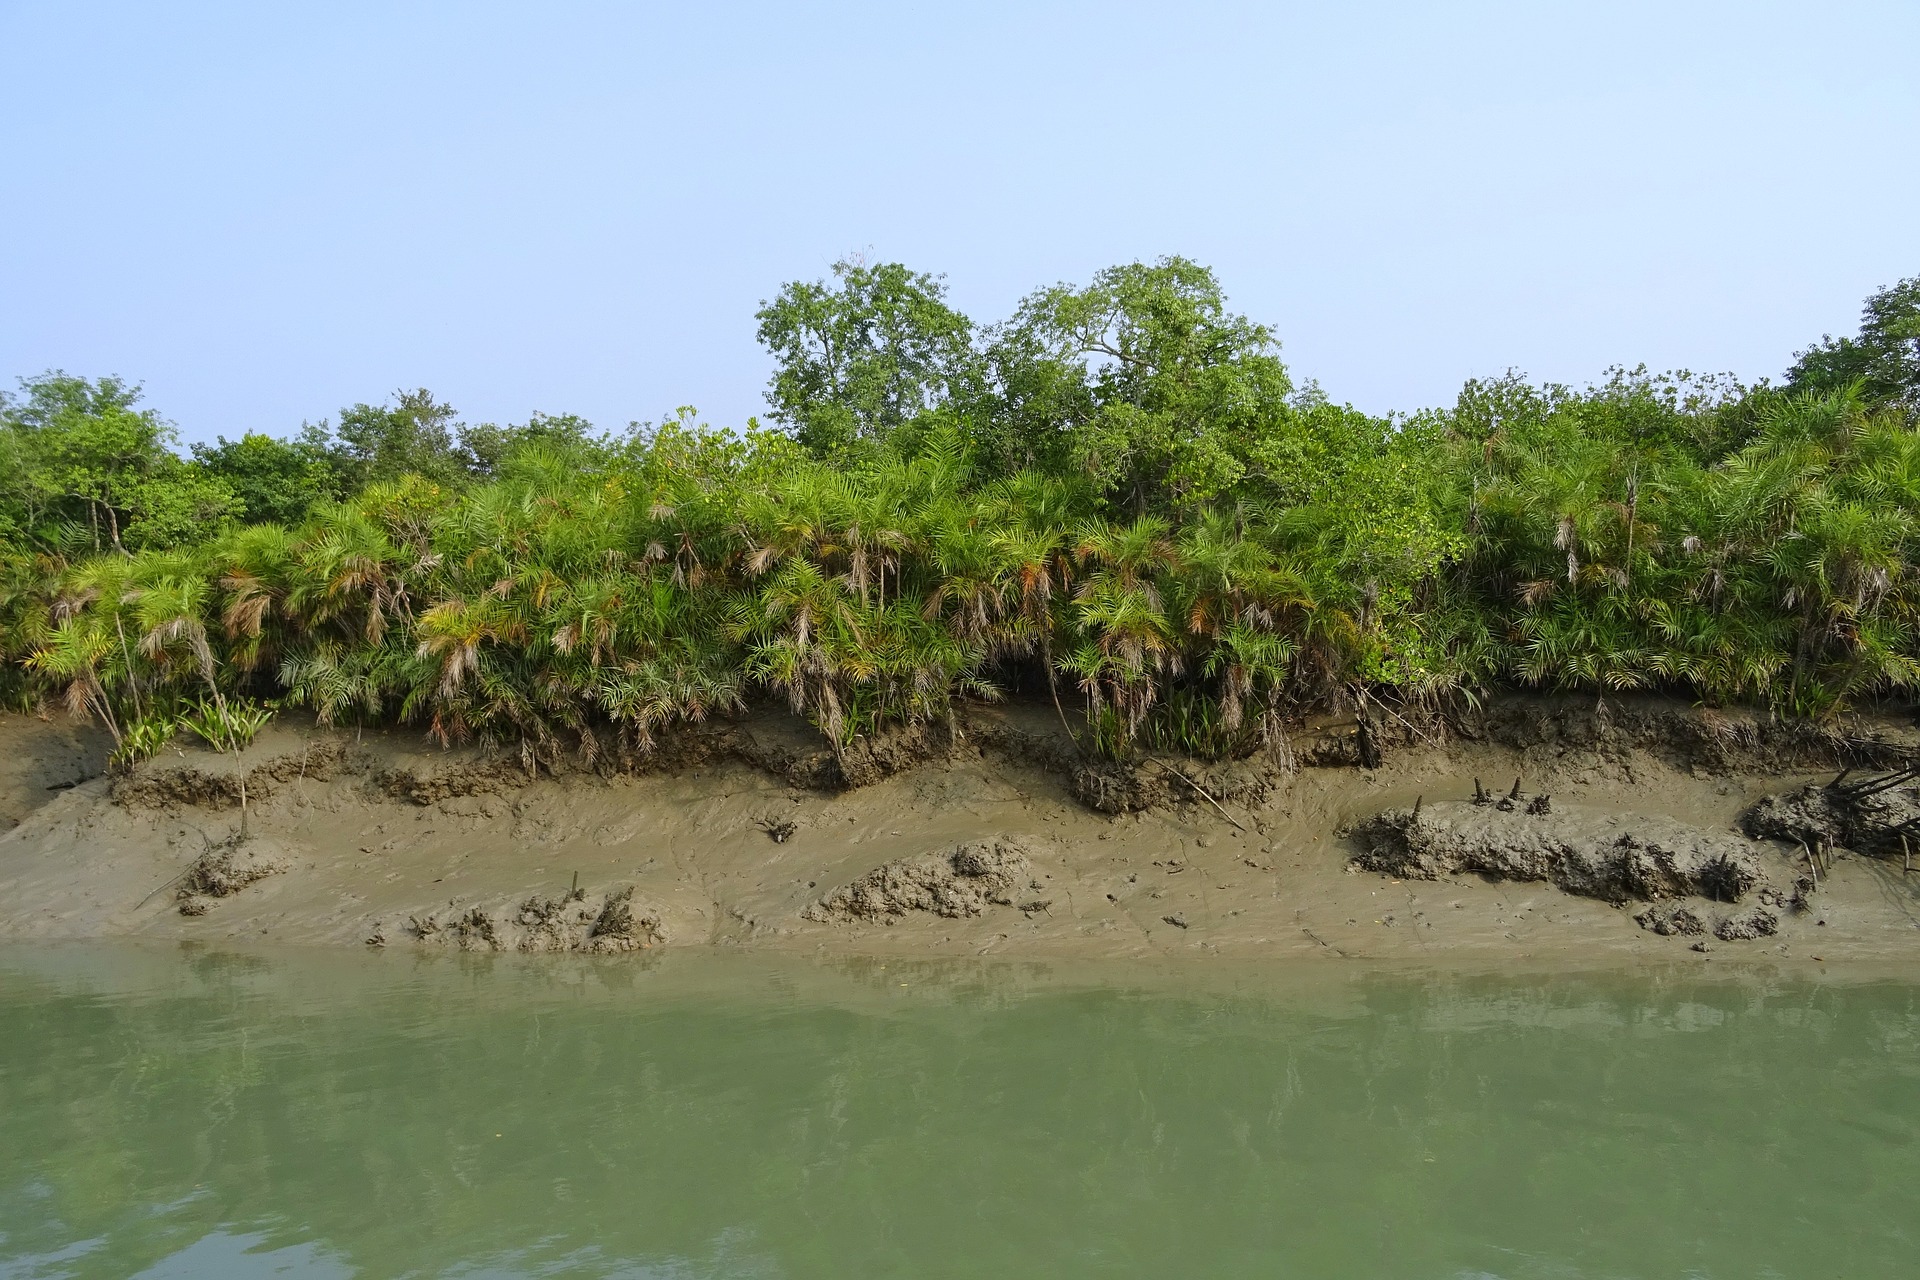 The Sundarbans region